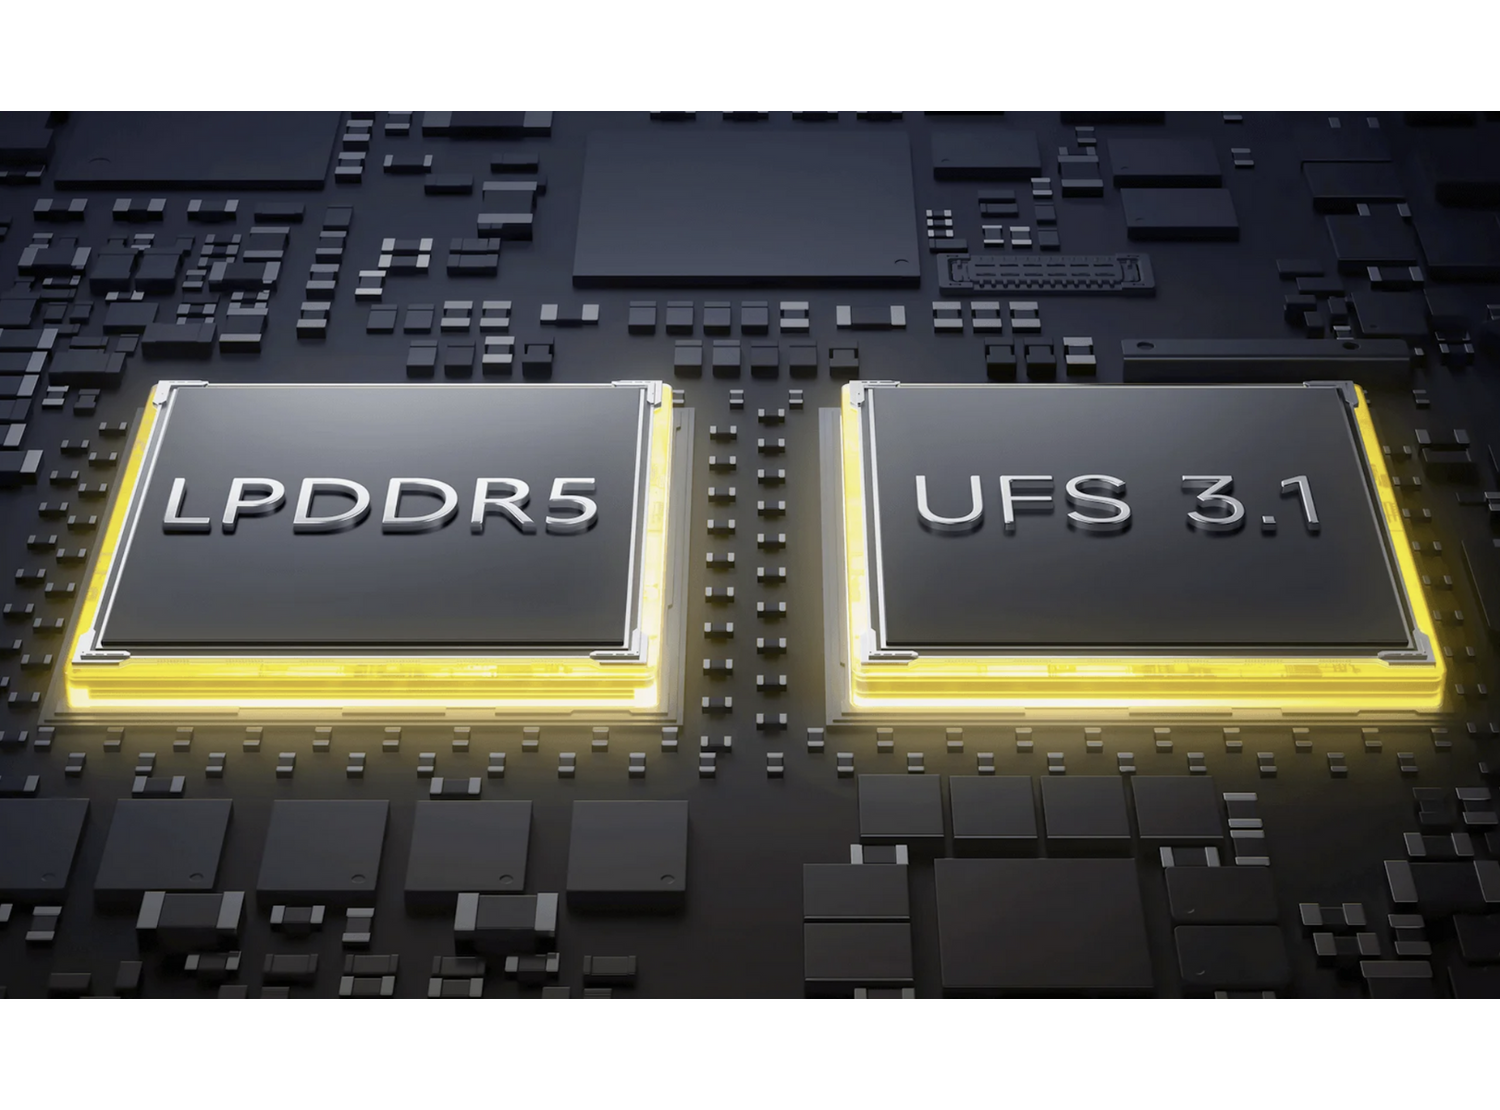 LPDDR5 + UFS 3.1Fast RAM, fast flash memory